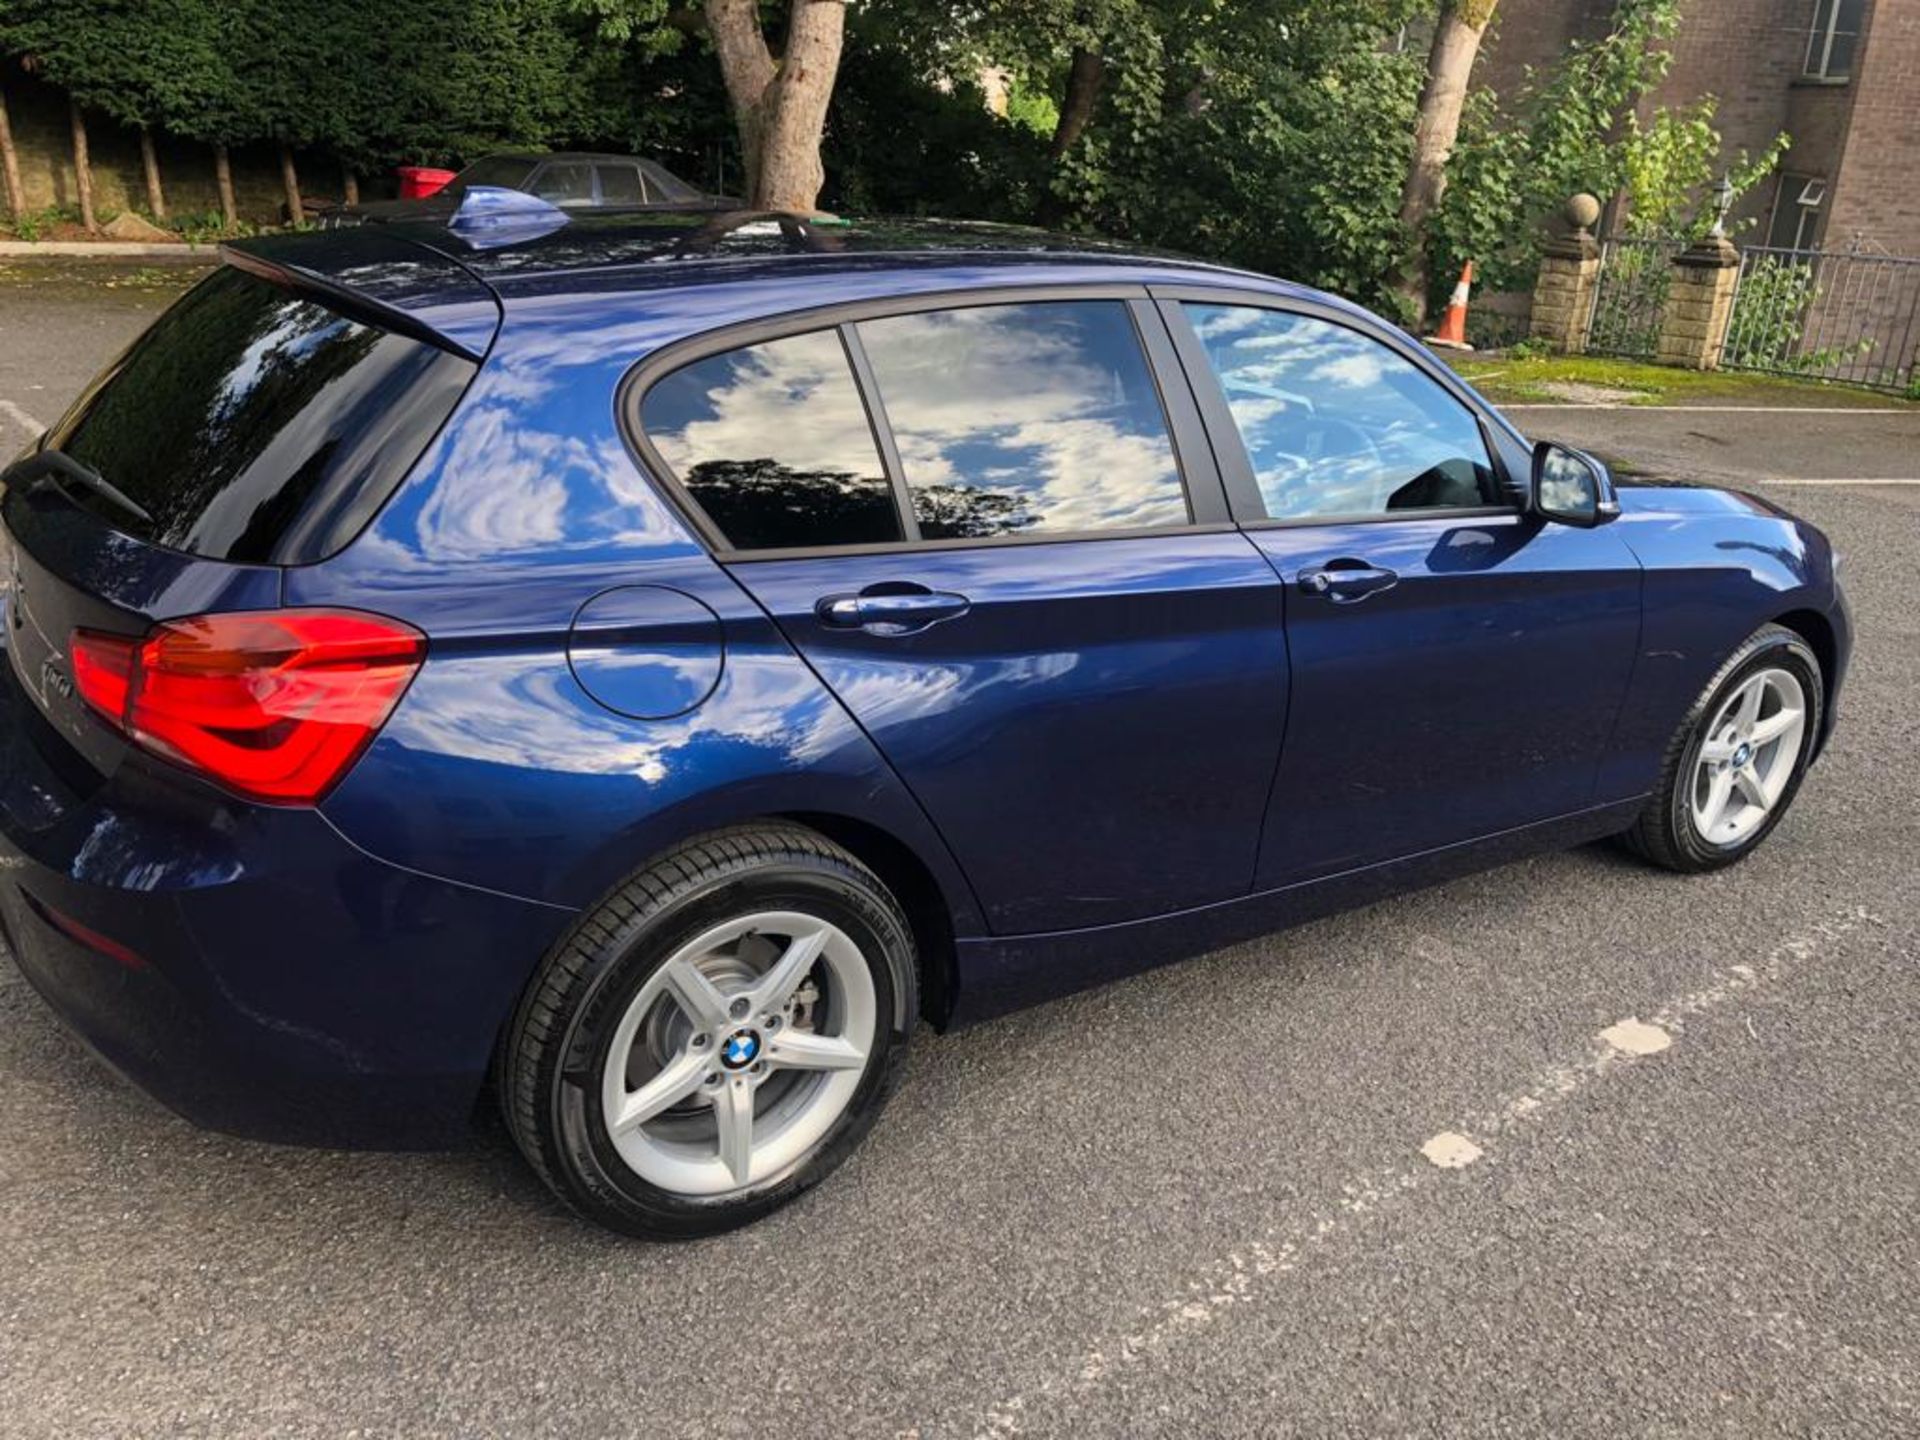 2018/67 REG BMW 118D SE AUTOMATIC BLUE DIESEL 5 DOOR HATCHBACK, SHOWING 0 FORMER KEEPERS *PLUS VAT* - Image 6 of 18